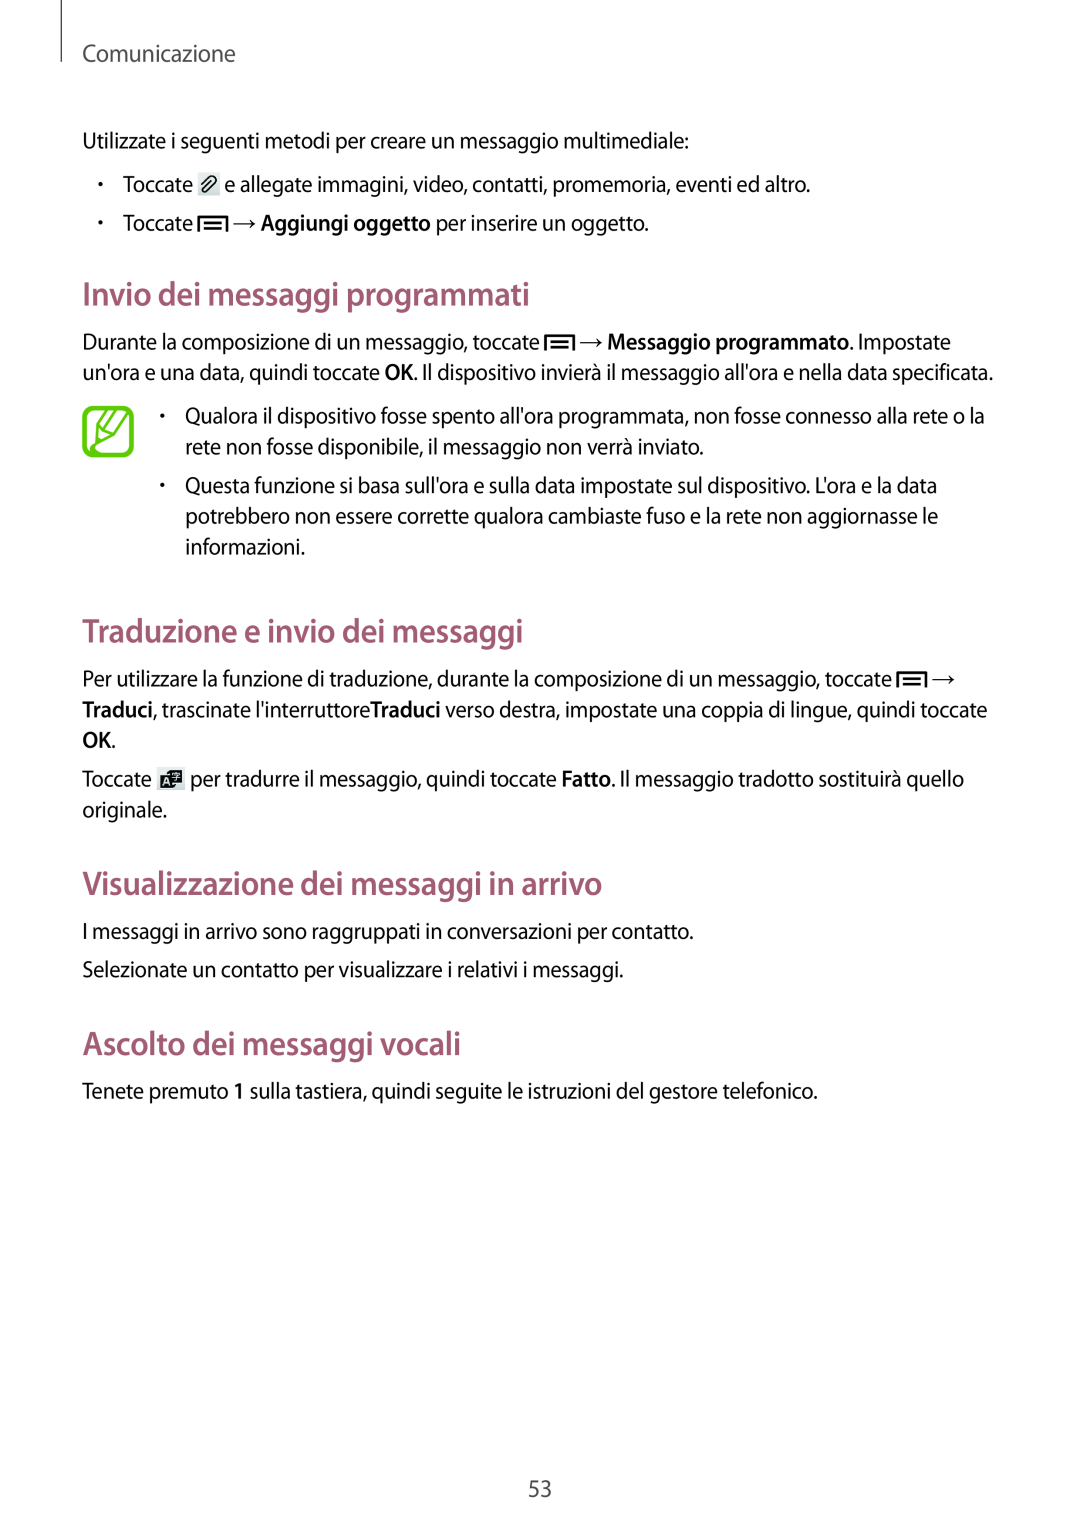 Samsung GT-I9195DKVLUX manual Invio dei messaggi programmati, Traduzione e invio dei messaggi, Ascolto dei messaggi vocali 